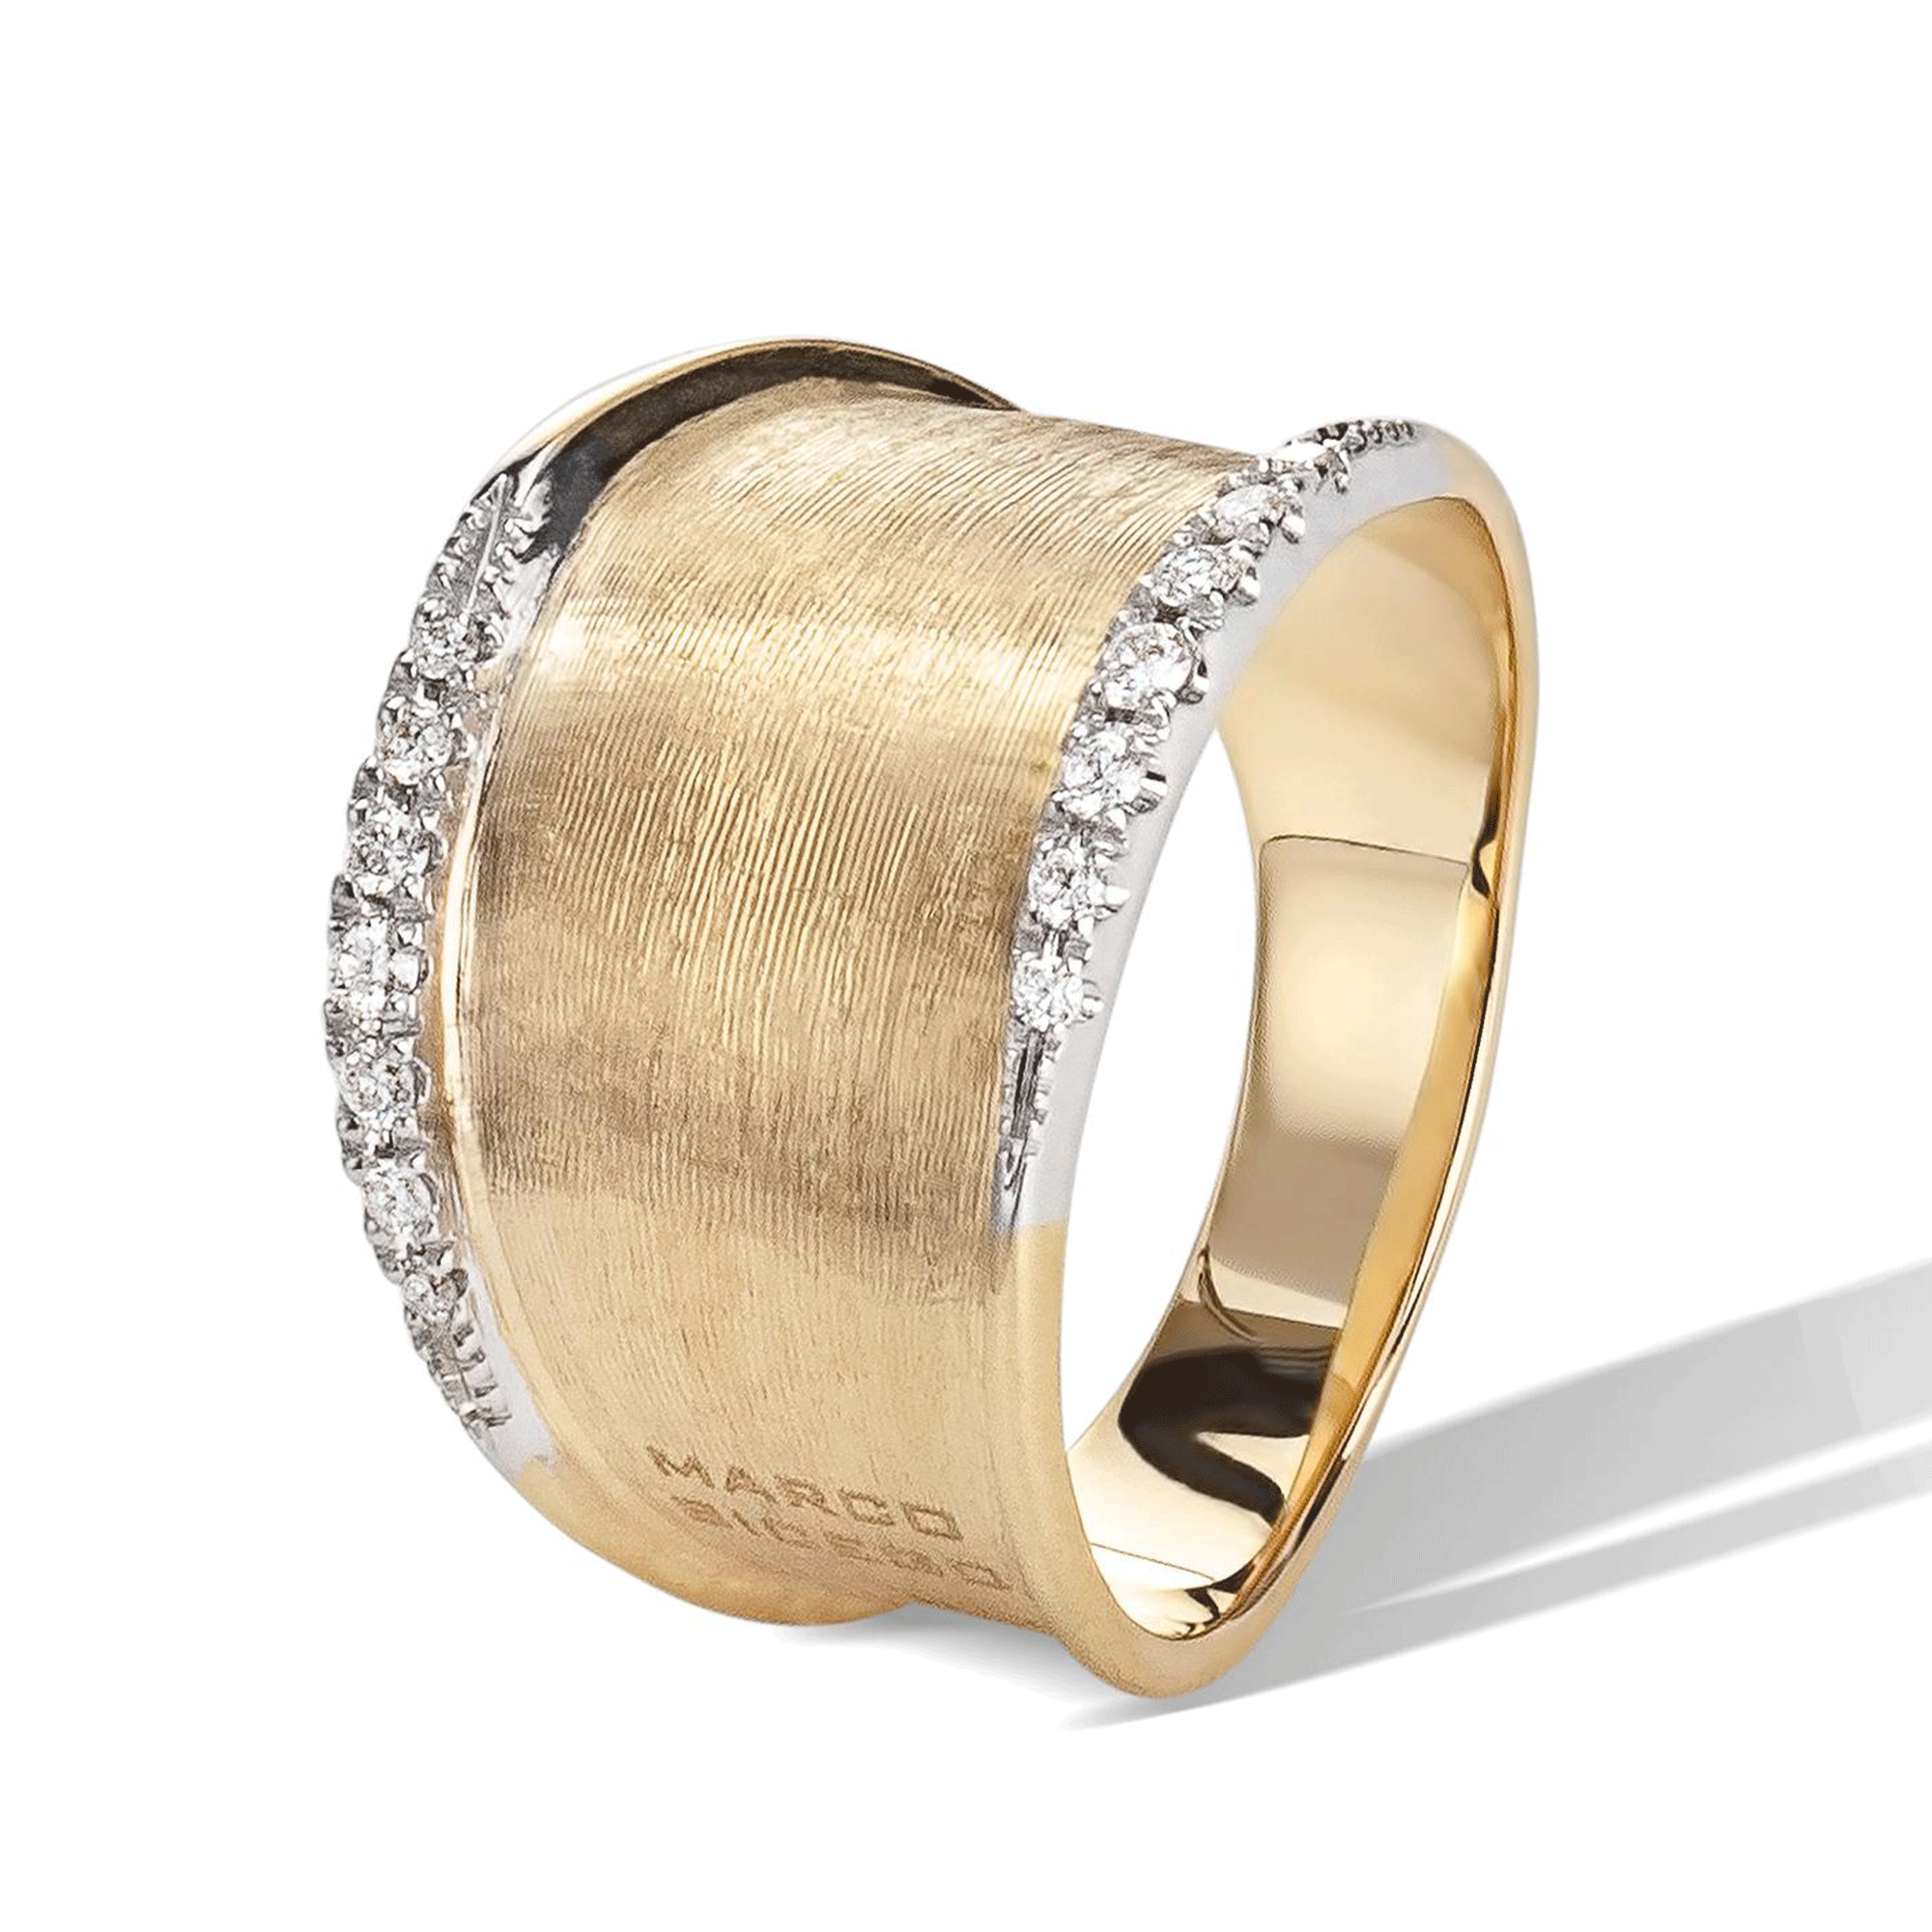 Lunaria 18ct Yellow & White Gold Ring with Diamond Set Edge